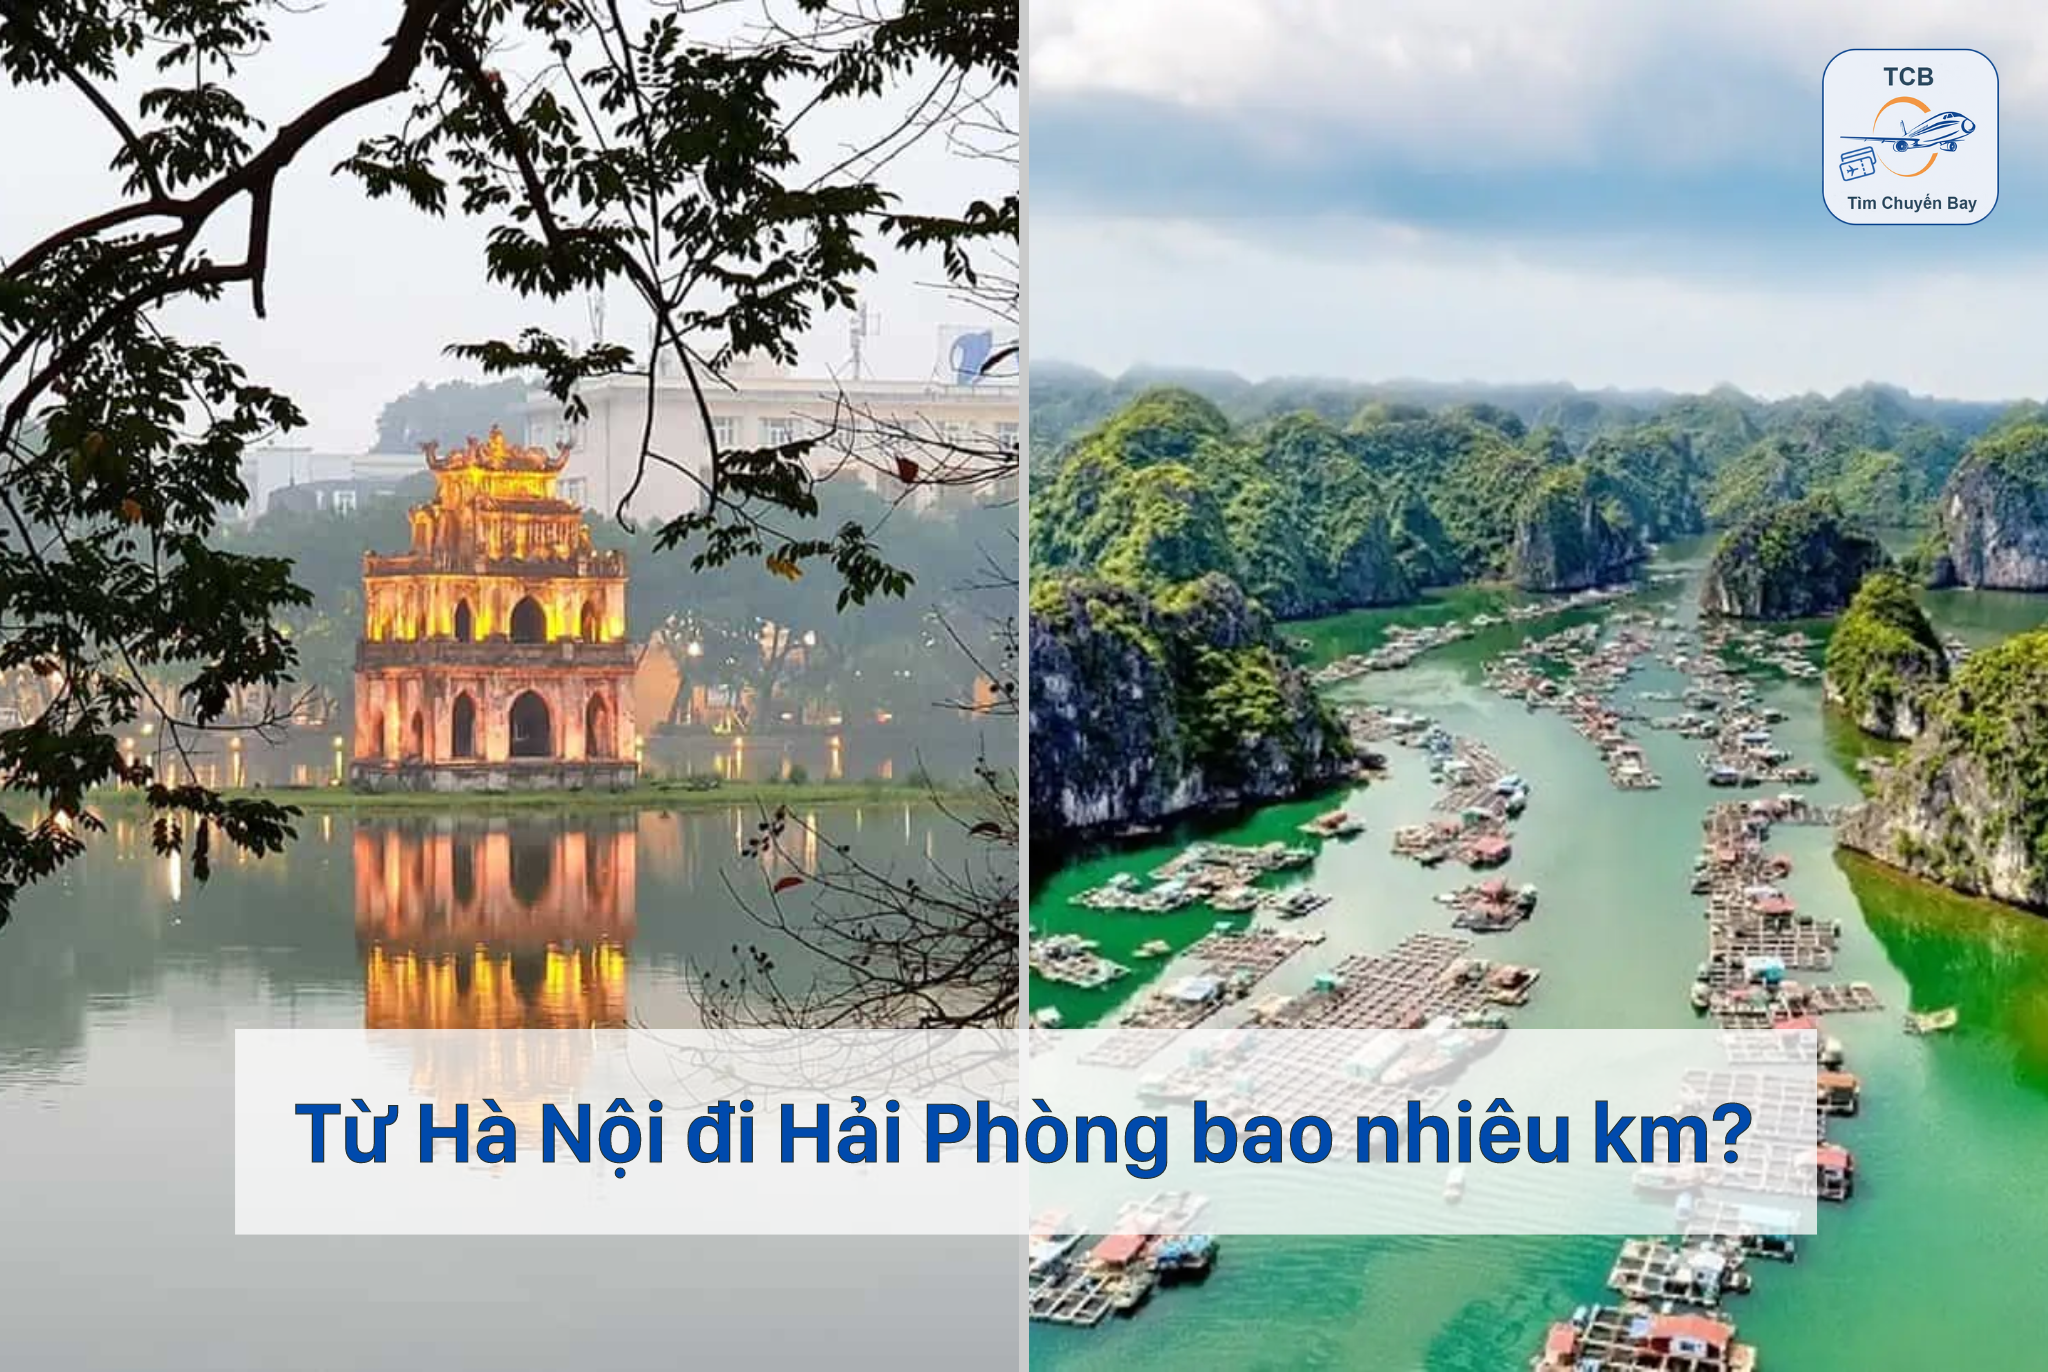 Khoảng cách từ Hà Nội đi Hải Phòng bao nhiêu km